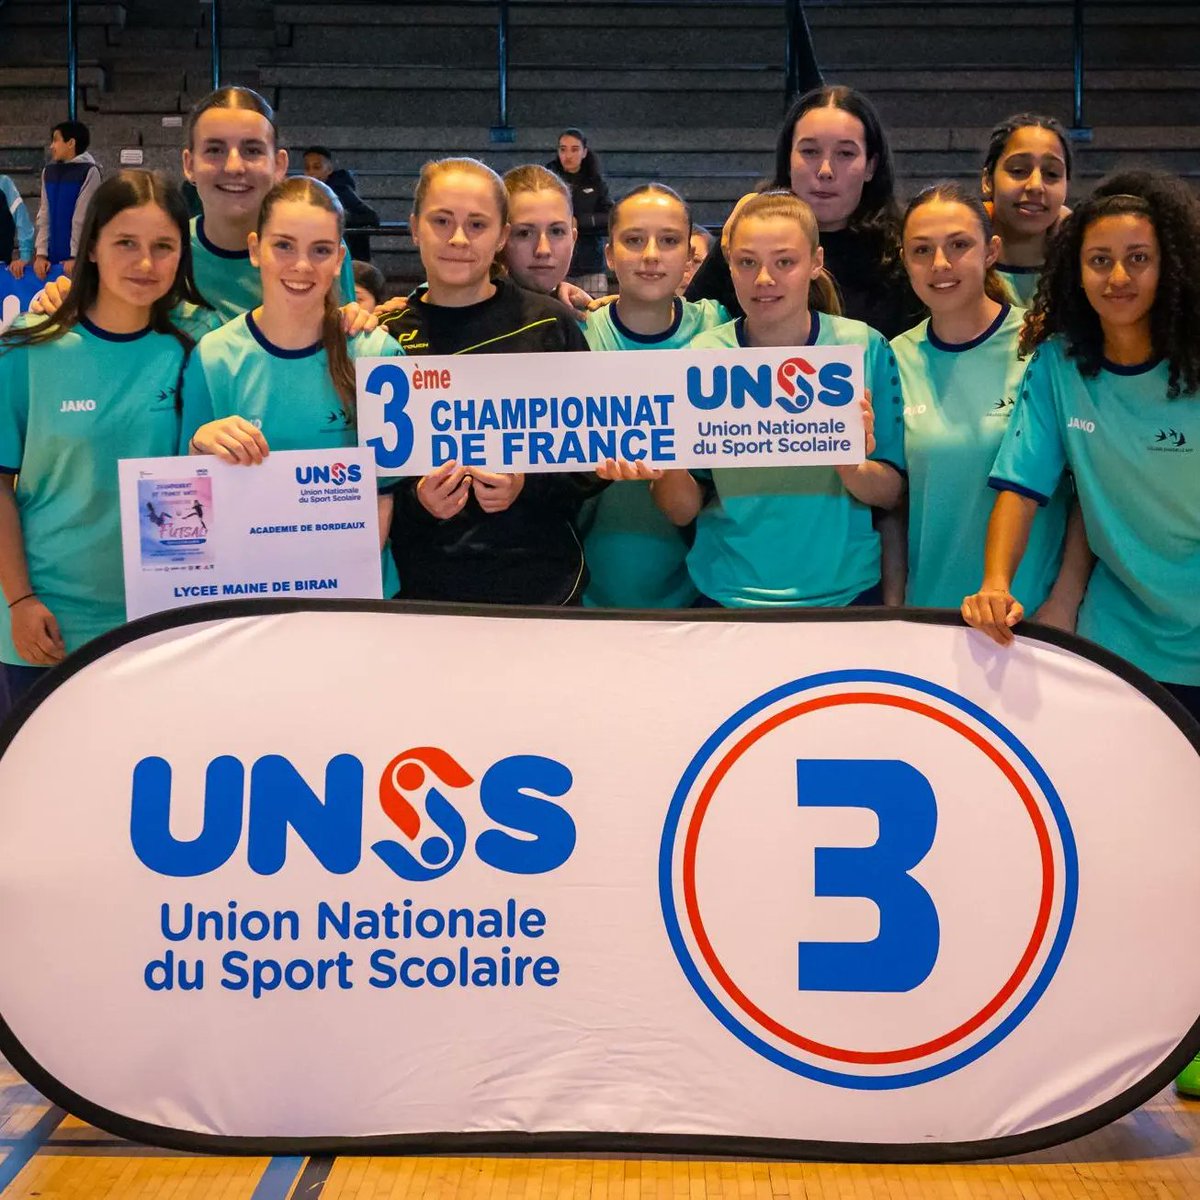 Et voici nos nouvelles championnes nationales : L'équipe du lycée Louis Vincent de Metz 🏆 En deuxième place, nous retrouvons l'équipe du lycée Suger de Saint Denis 🥈 En troisième place, l'équipe du lycée Maine de Biran de Bergerac 🥉 Bravo à toutes ! #FranceUNSS #UNSS #Futsal